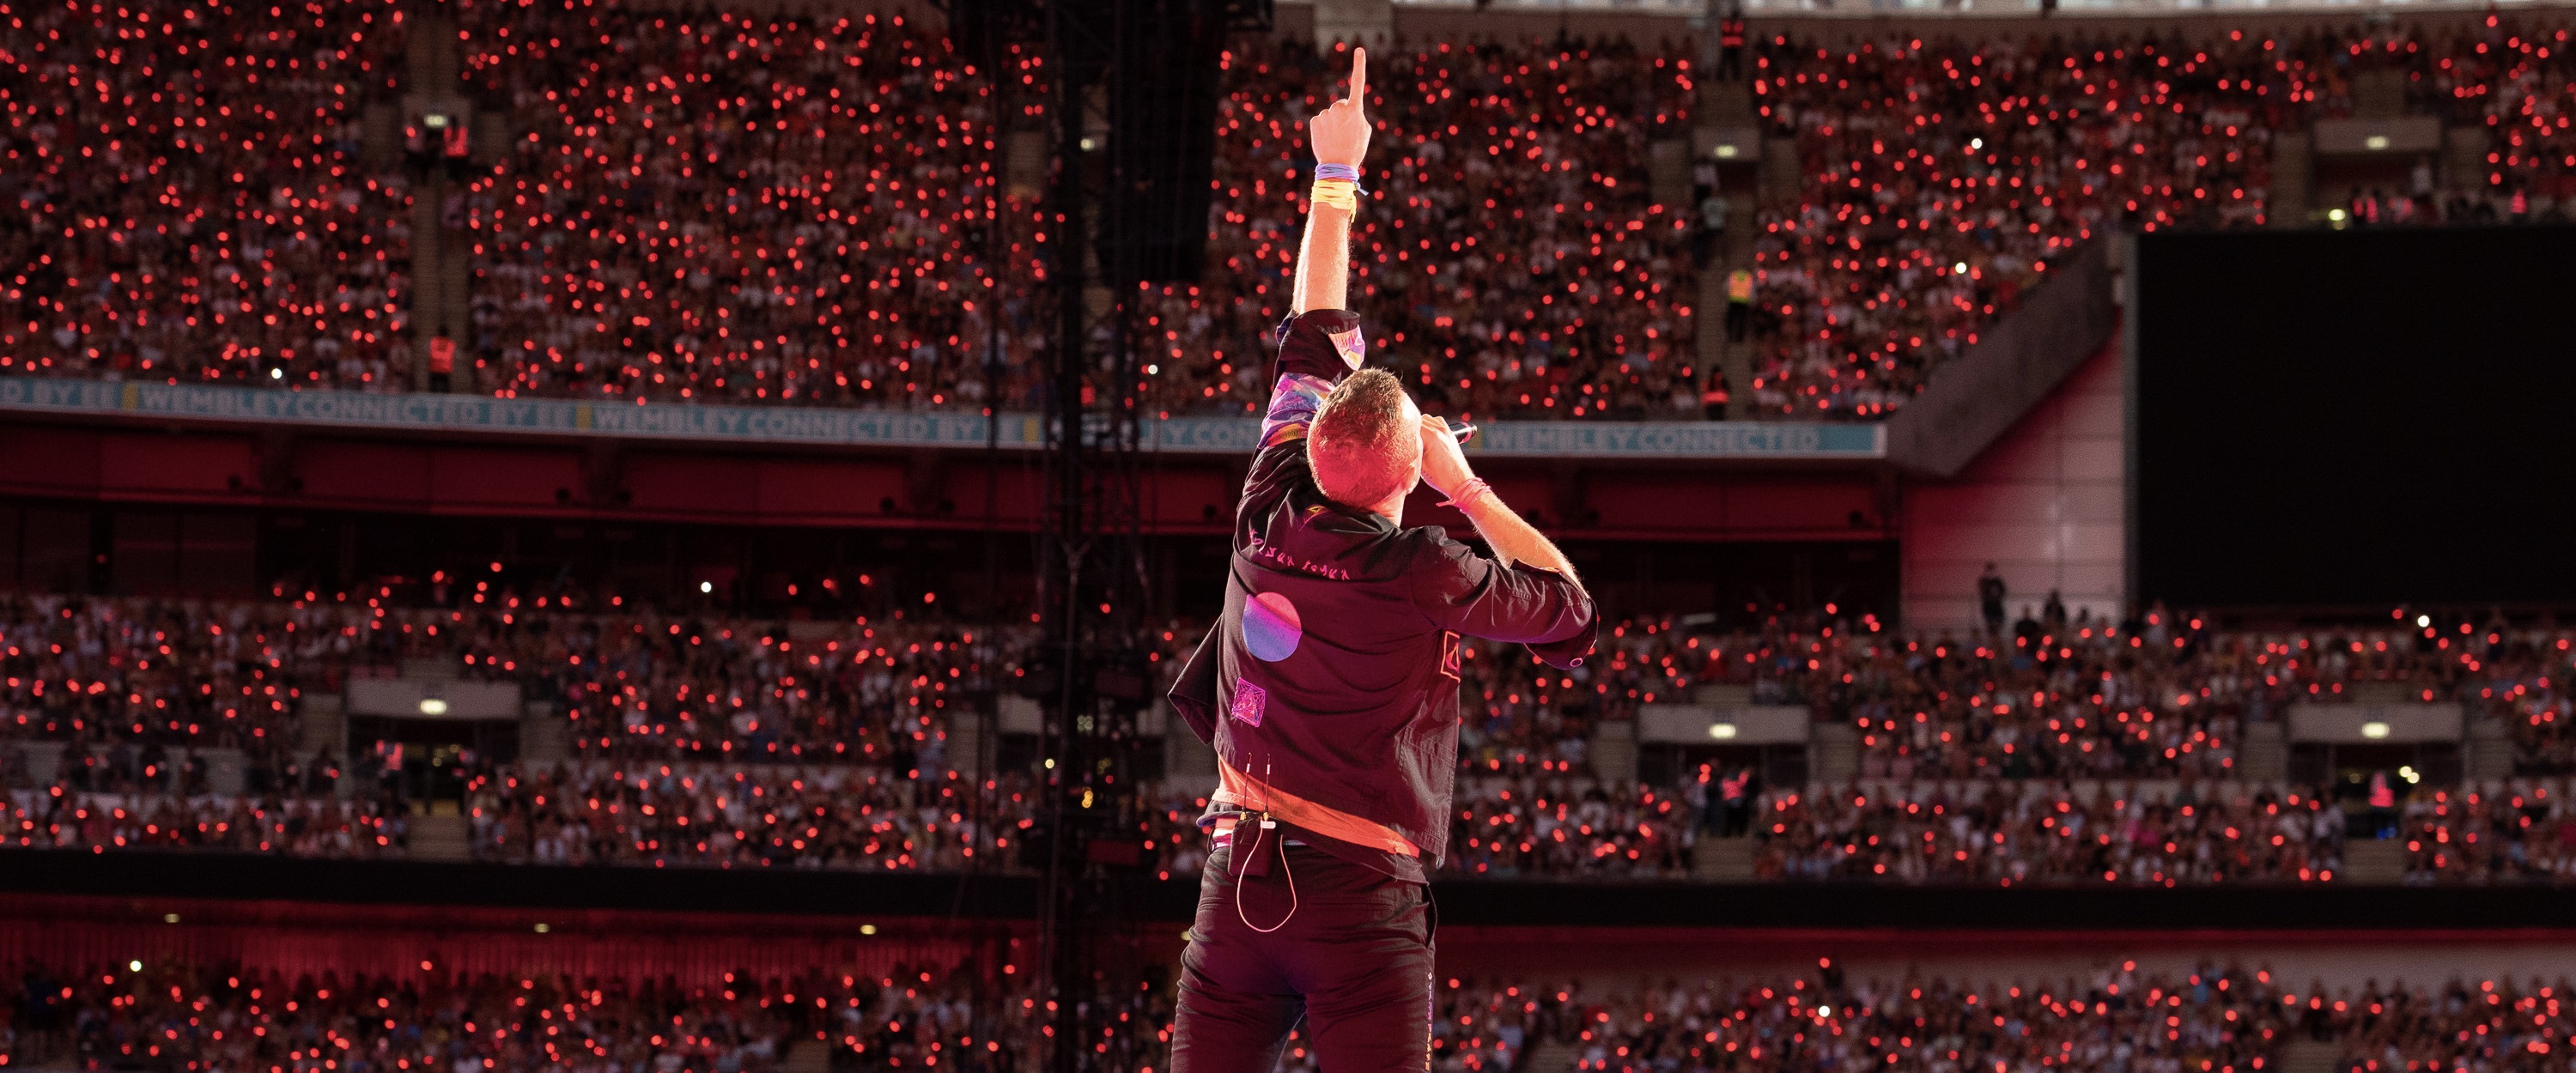 Licht, camera, actie: Coldplays concerten komen op het witte doek